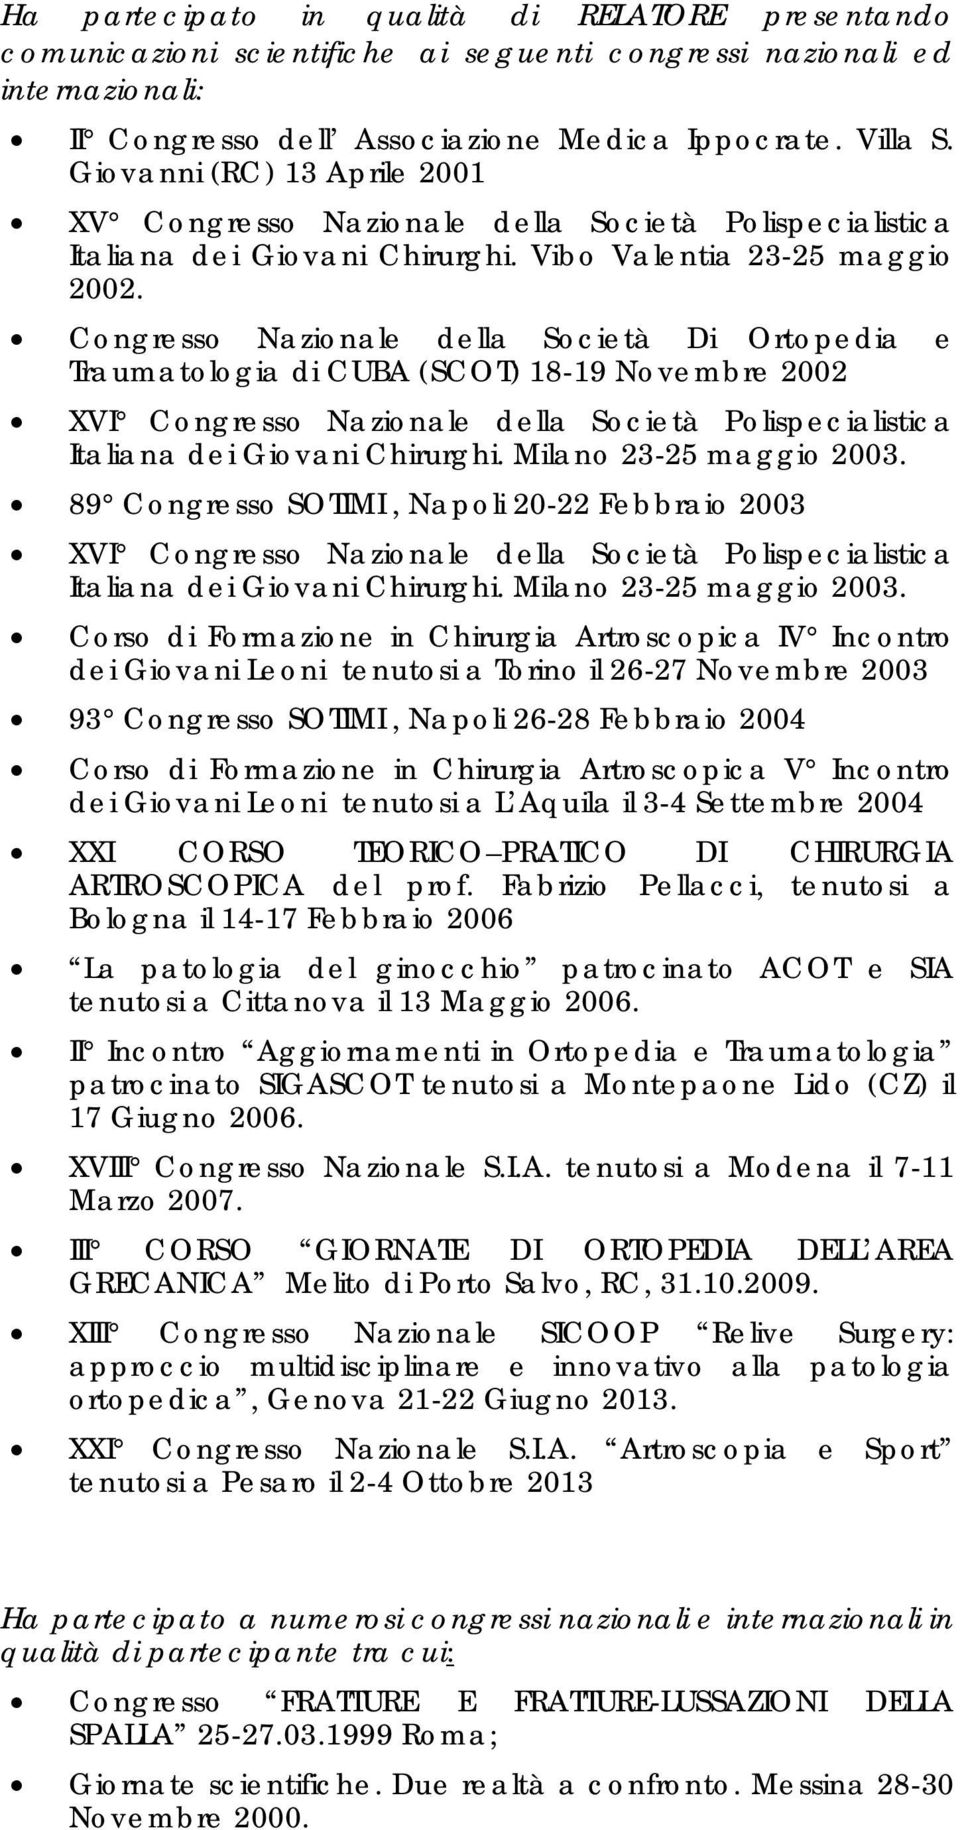 Congresso Nazionale della Società Di Ortopedia e Traumatologia di CUBA (SCOT) 18-19 Novembre 2002 XVI Congresso Nazionale della Società Polispecialistica Italiana dei Giovani Chirurghi.